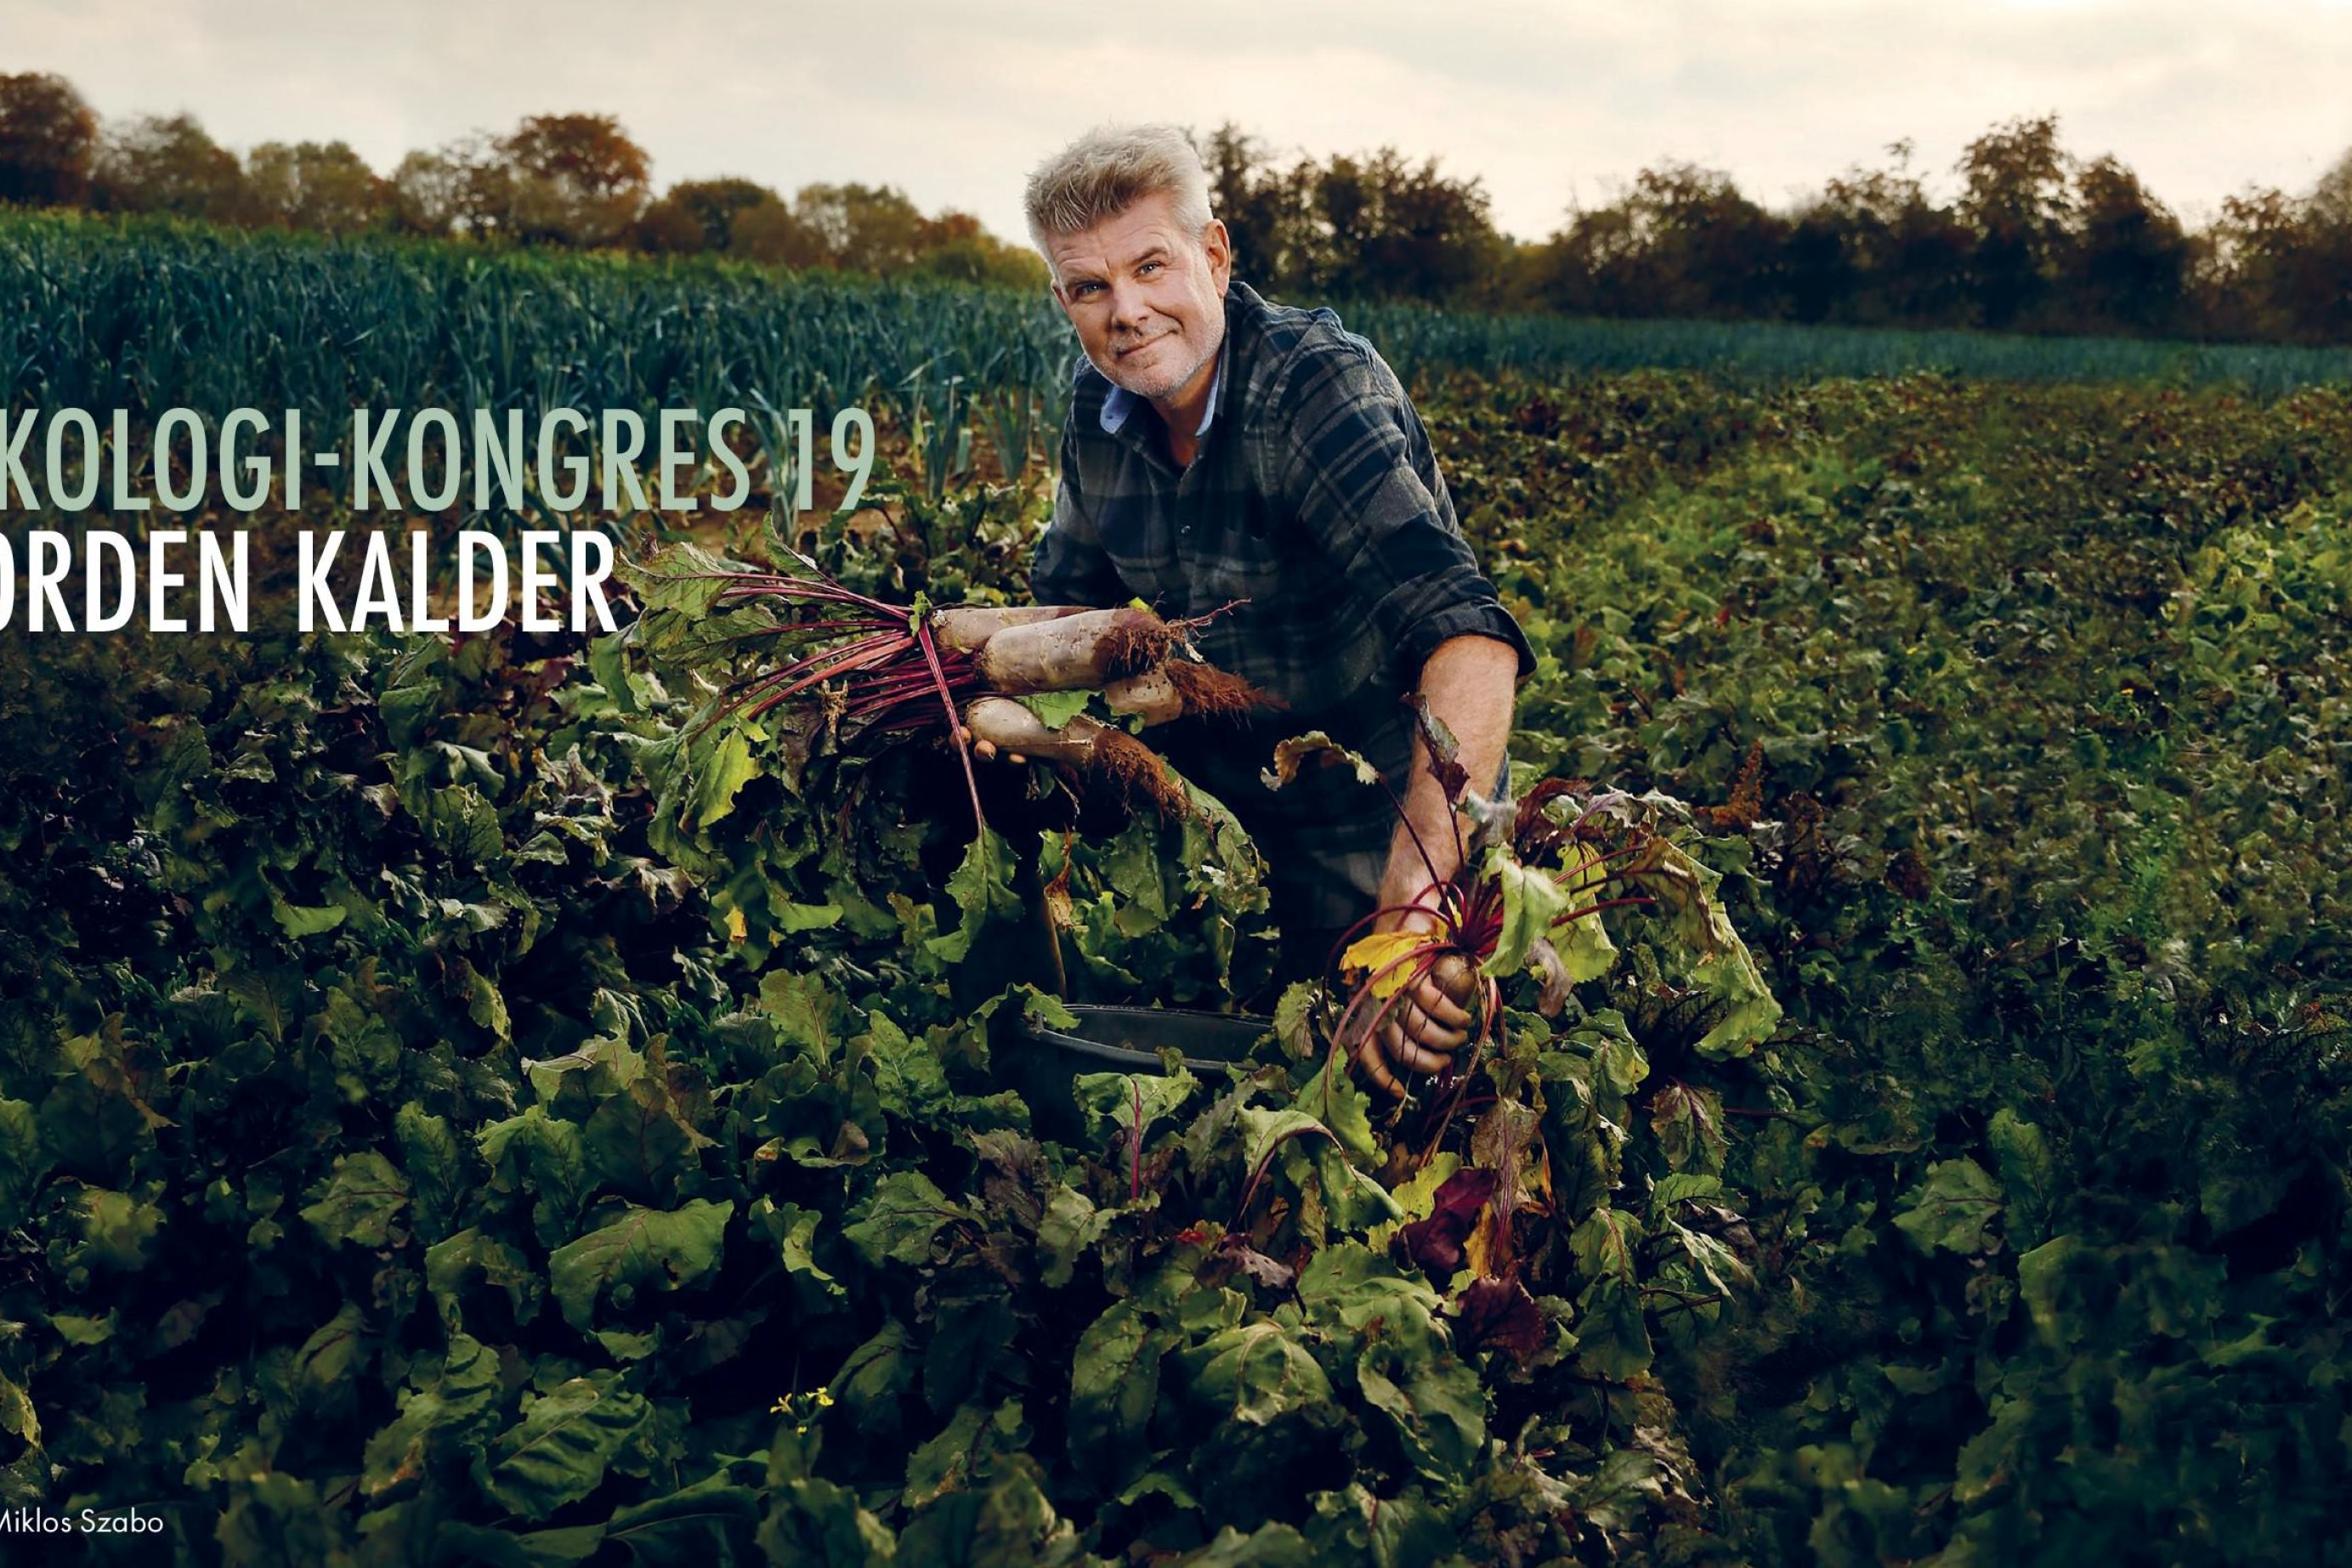 En økolog sidder i sin mark med afgrøder i hænderne - ved siden af ham er teksten 